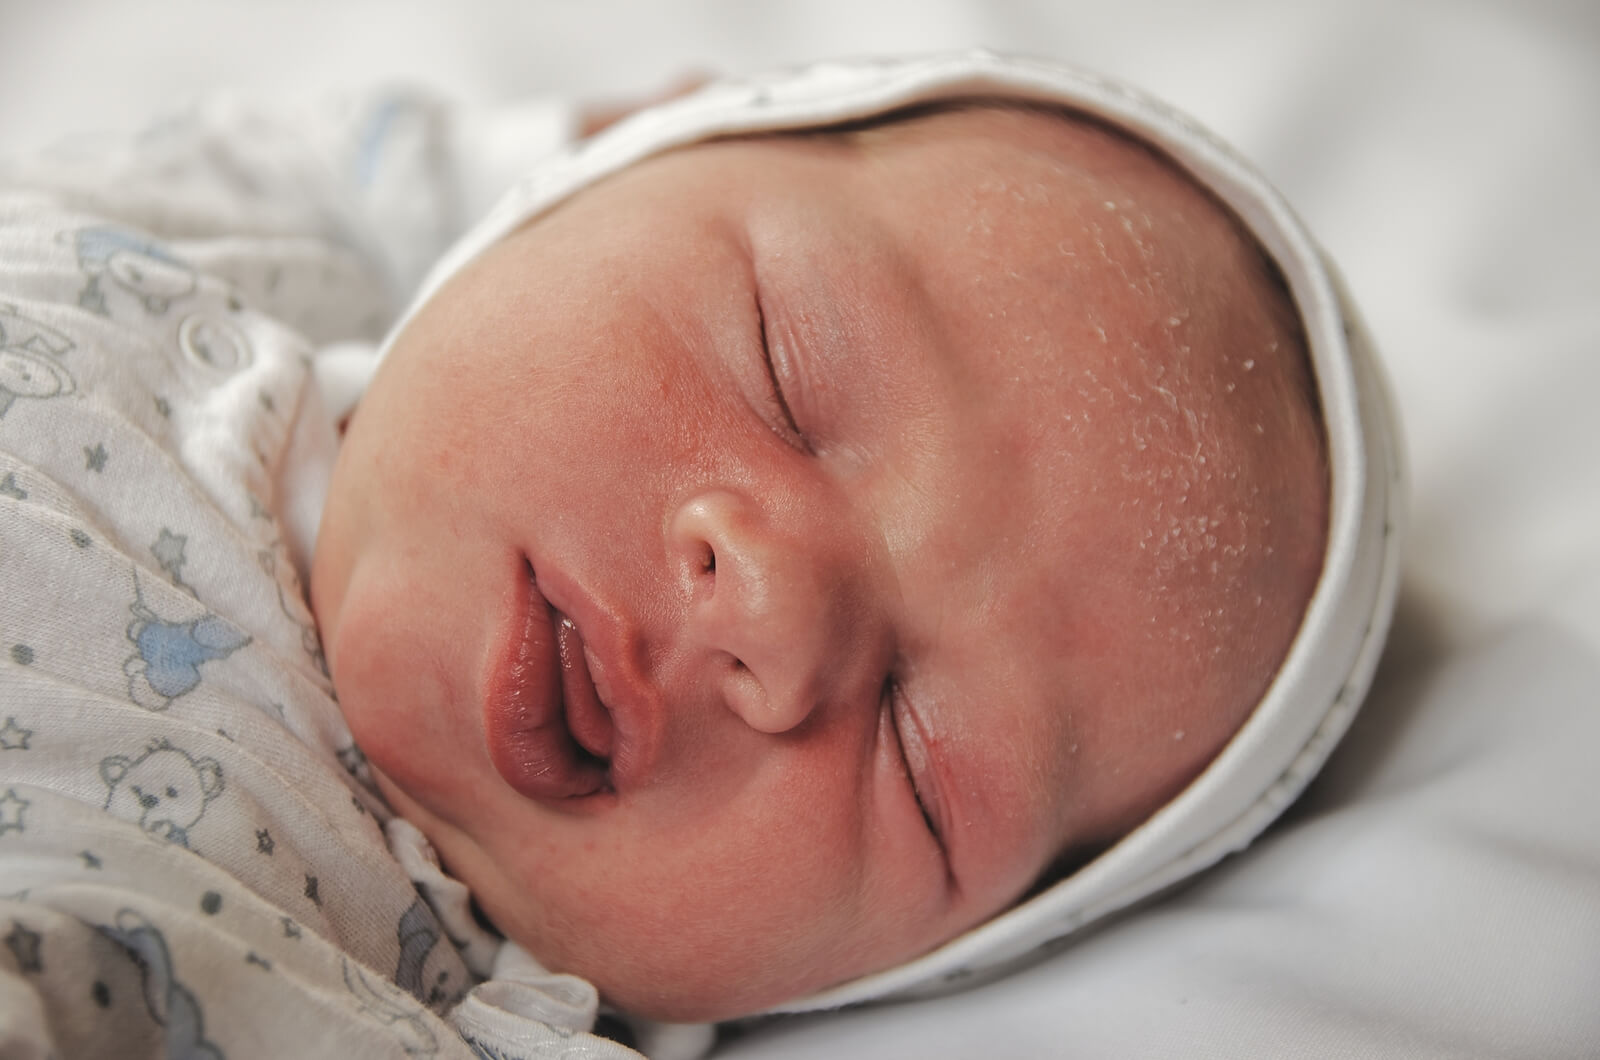 Bebé recién nacido con costra láctea o dermatitis seborreica infantil.